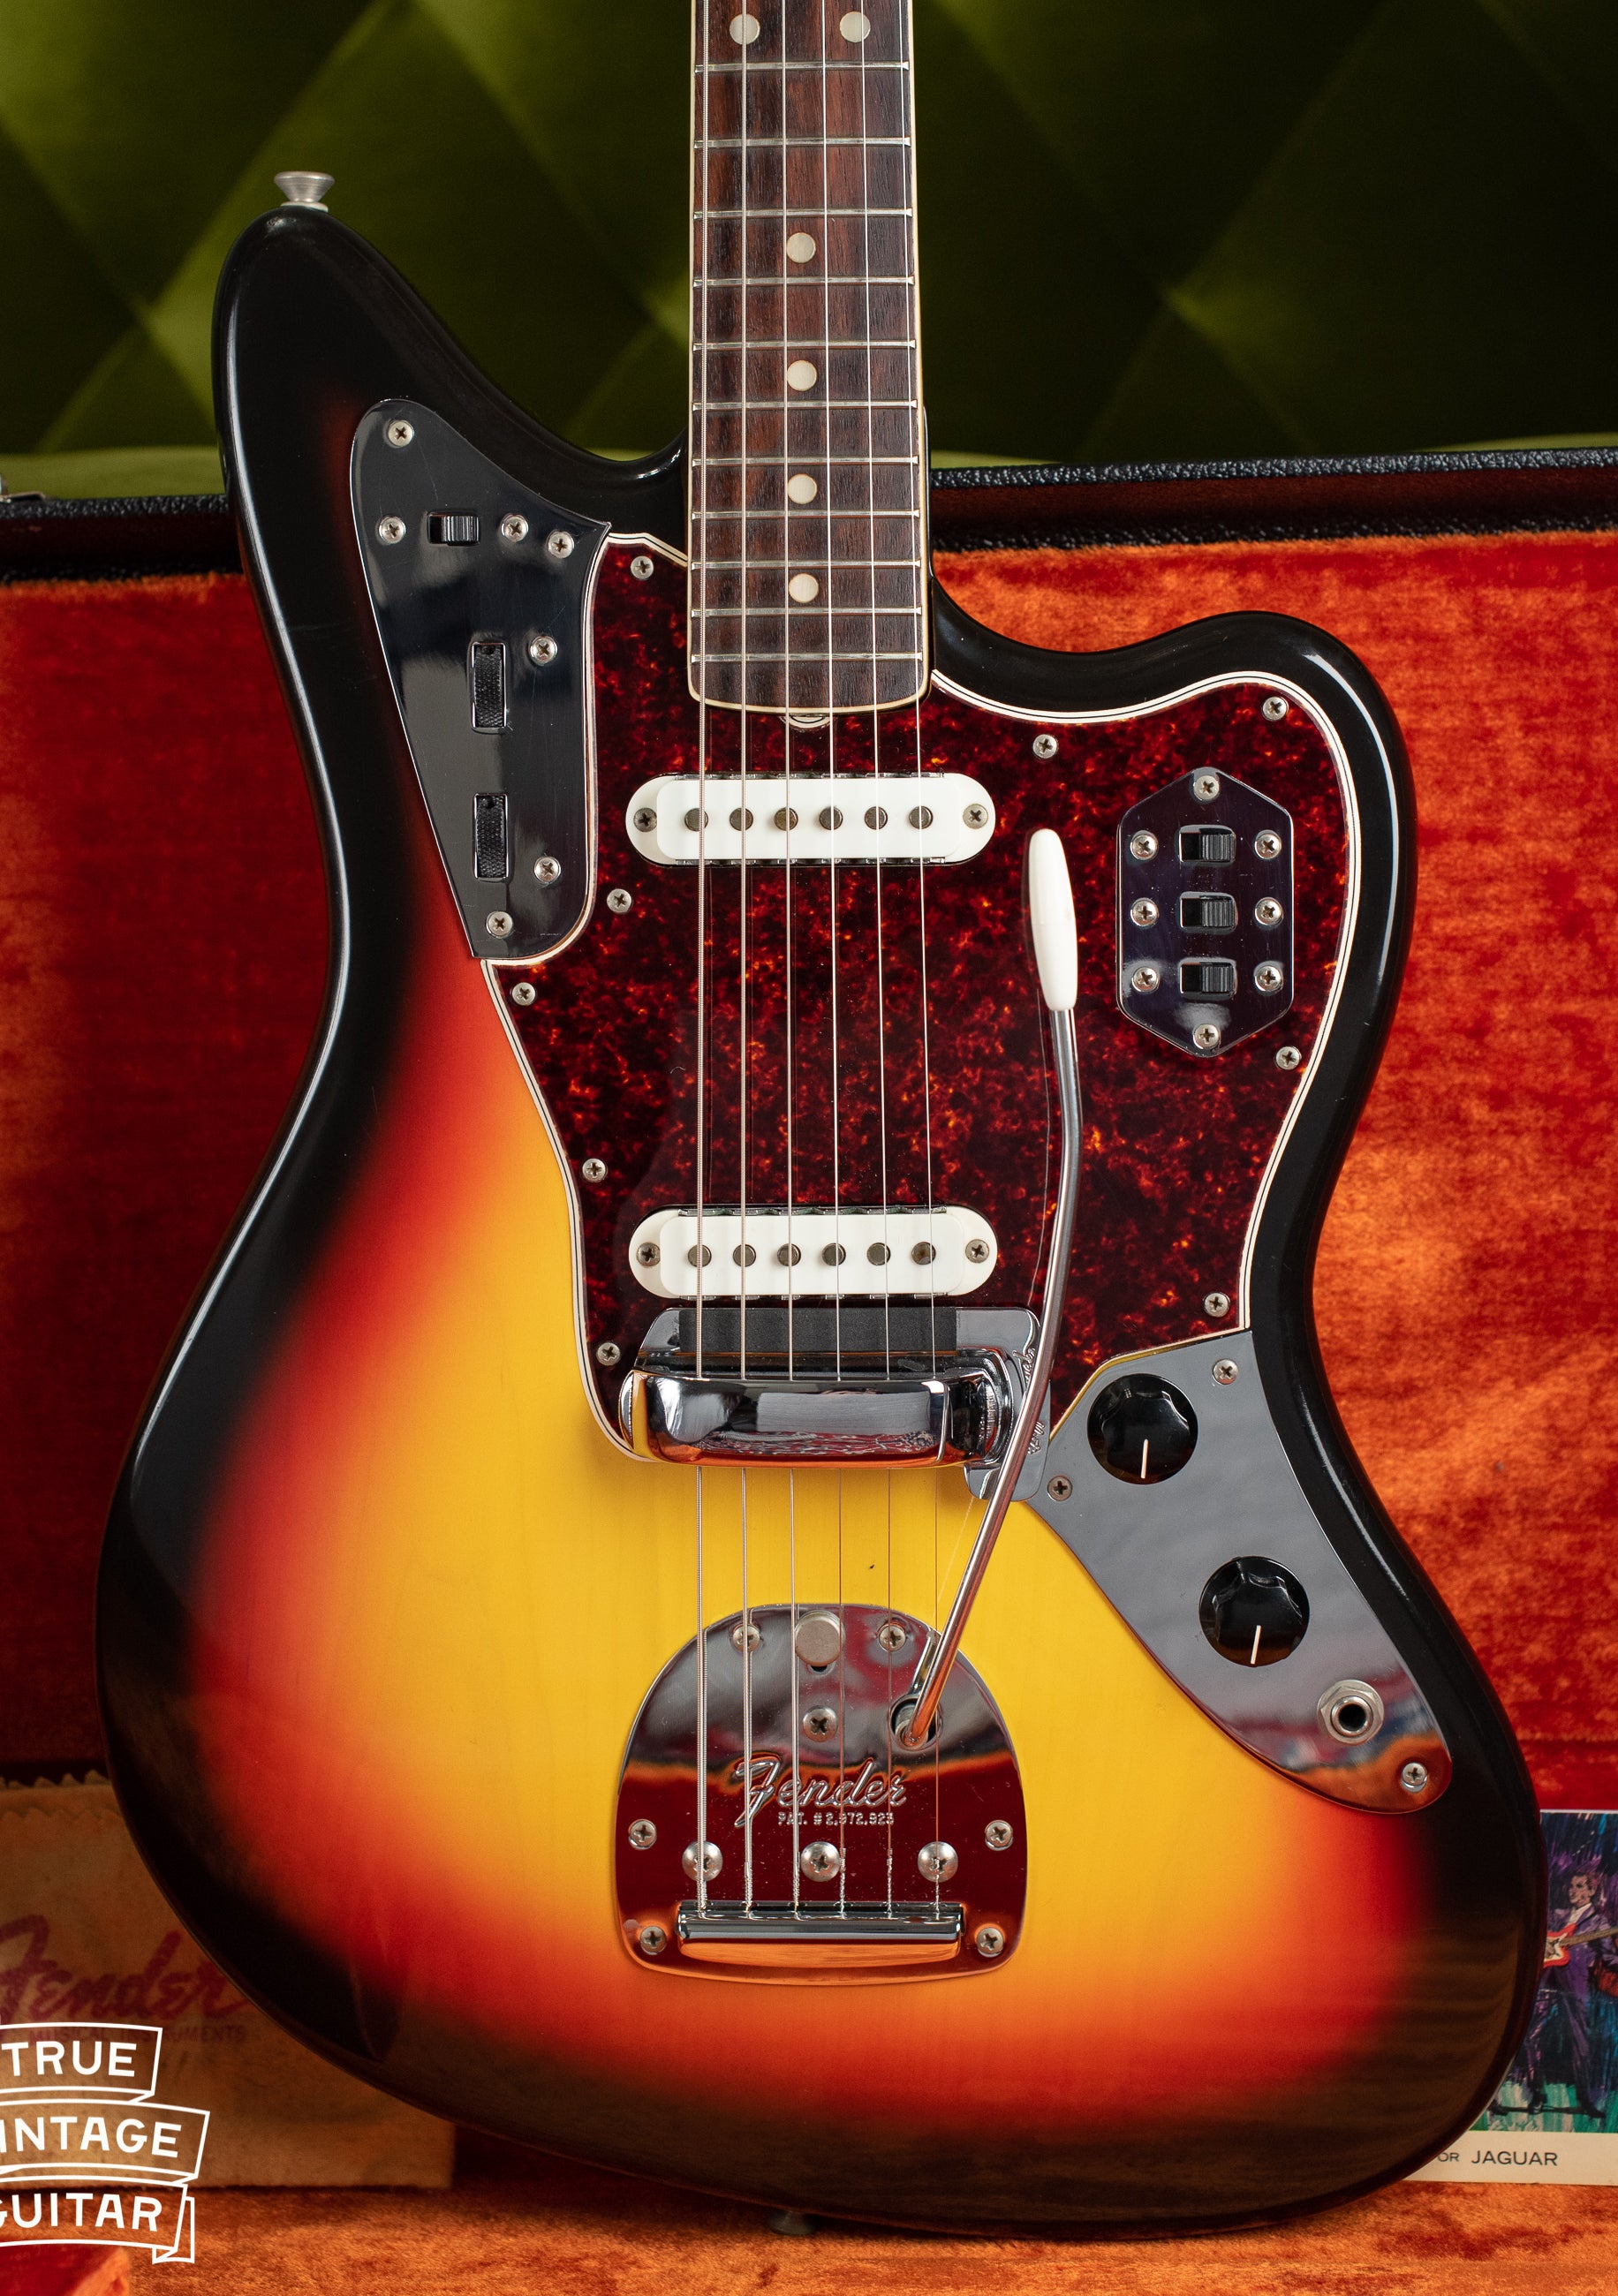 Vintage 1966 Fender Jaguar electric guitar, Sunburst finish